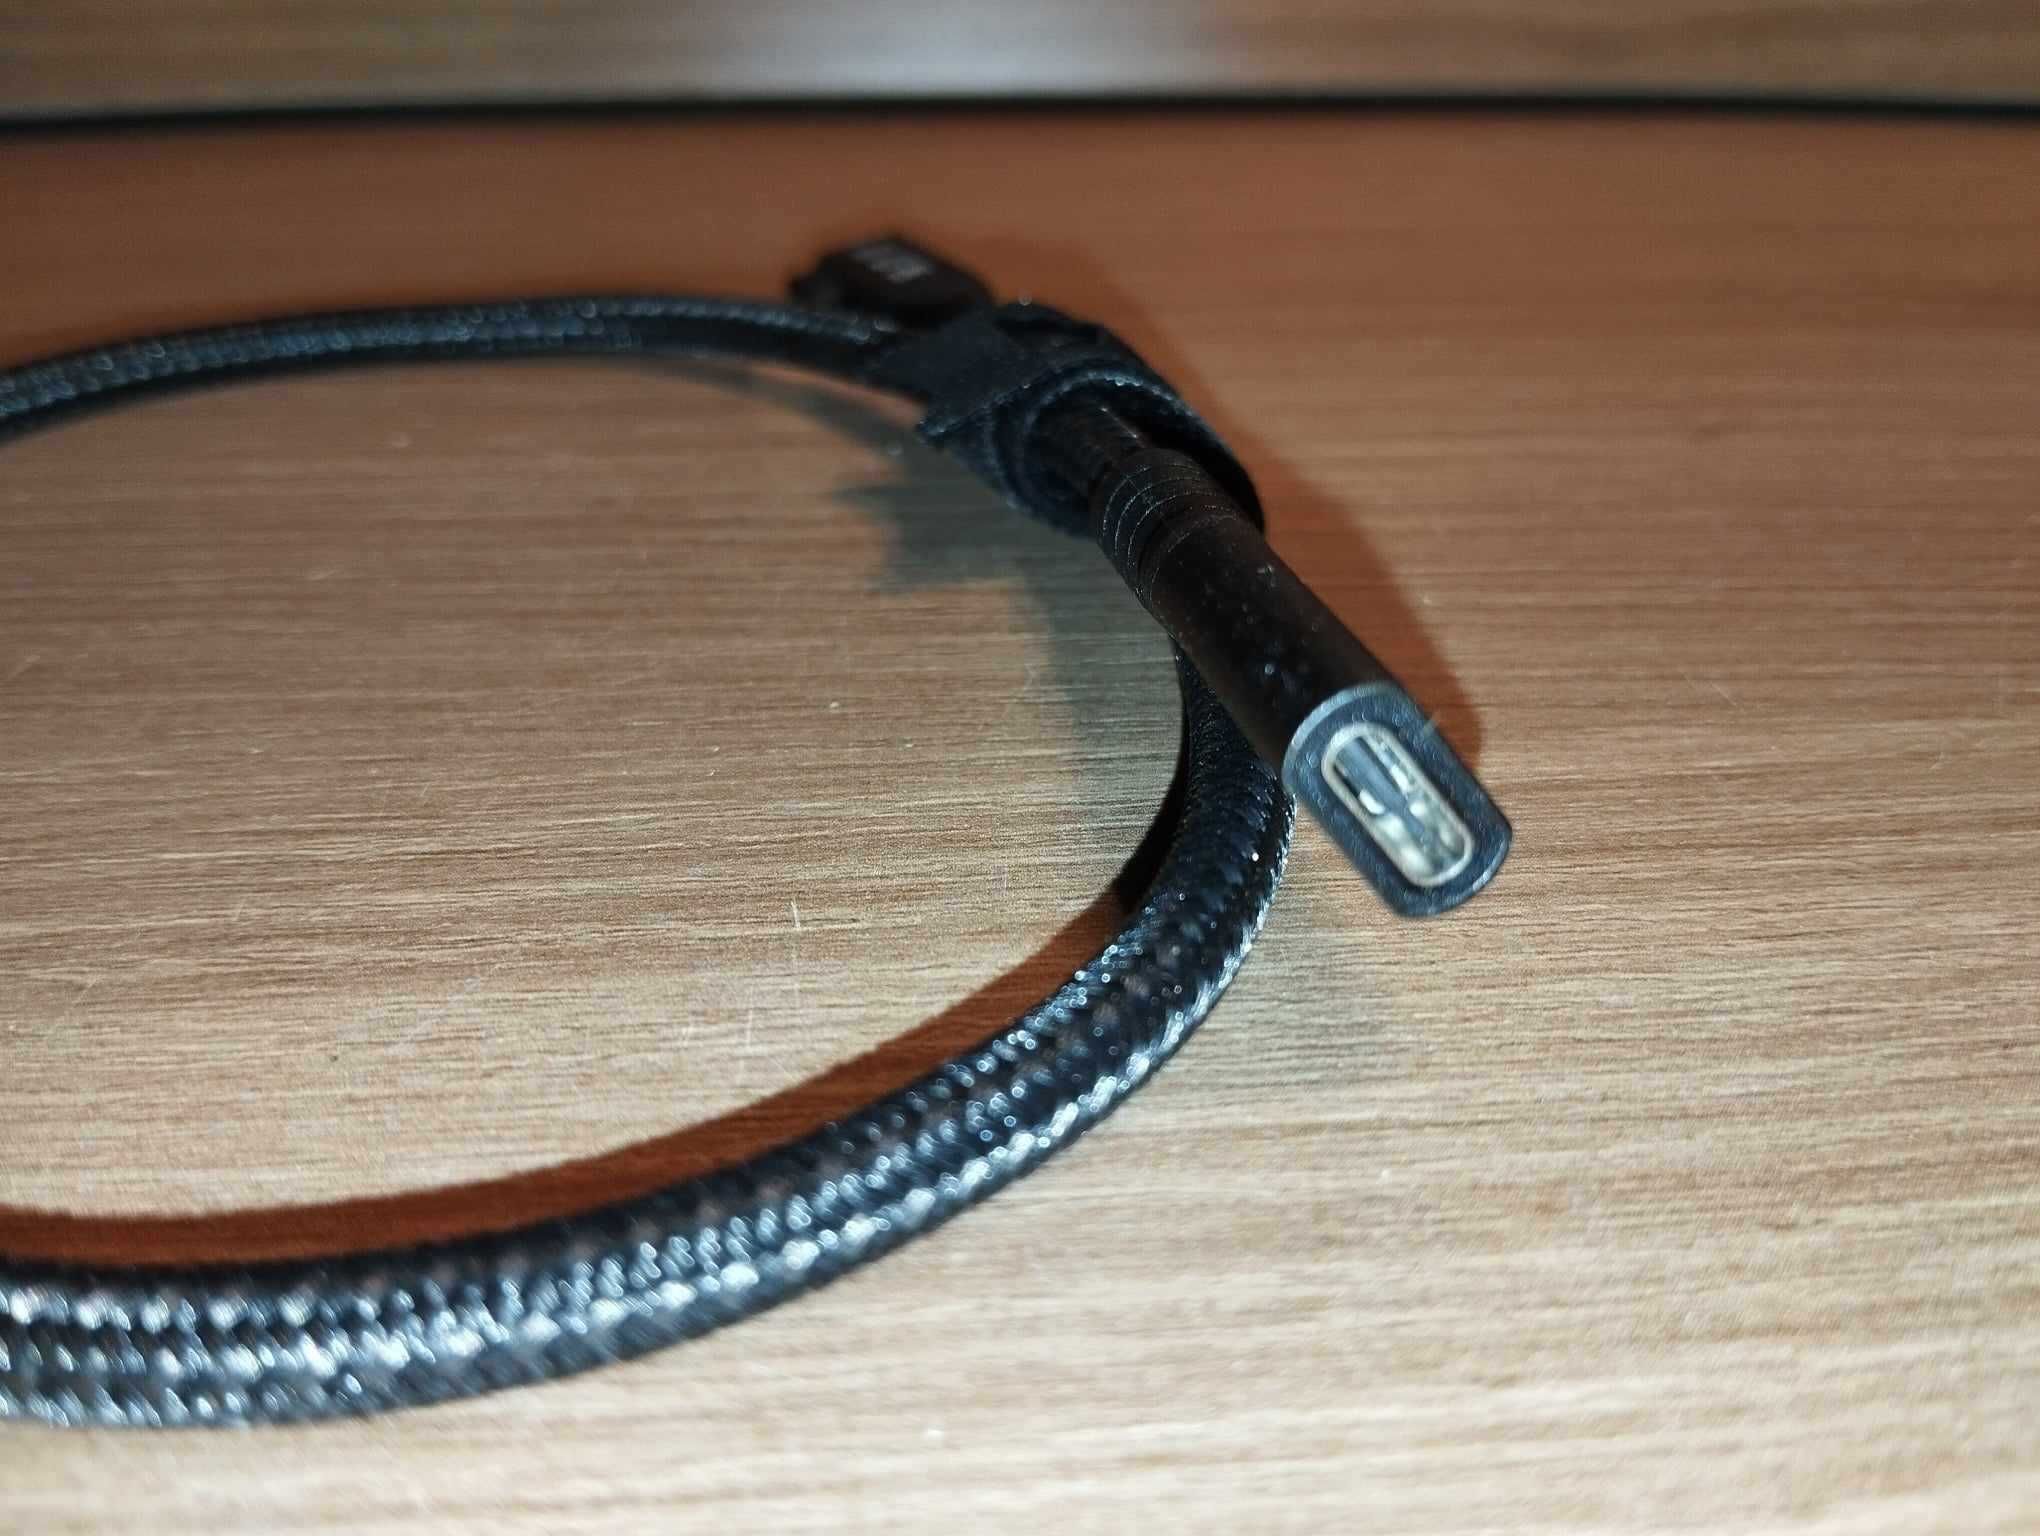 Kabel USB-C - Męsko-Żeński